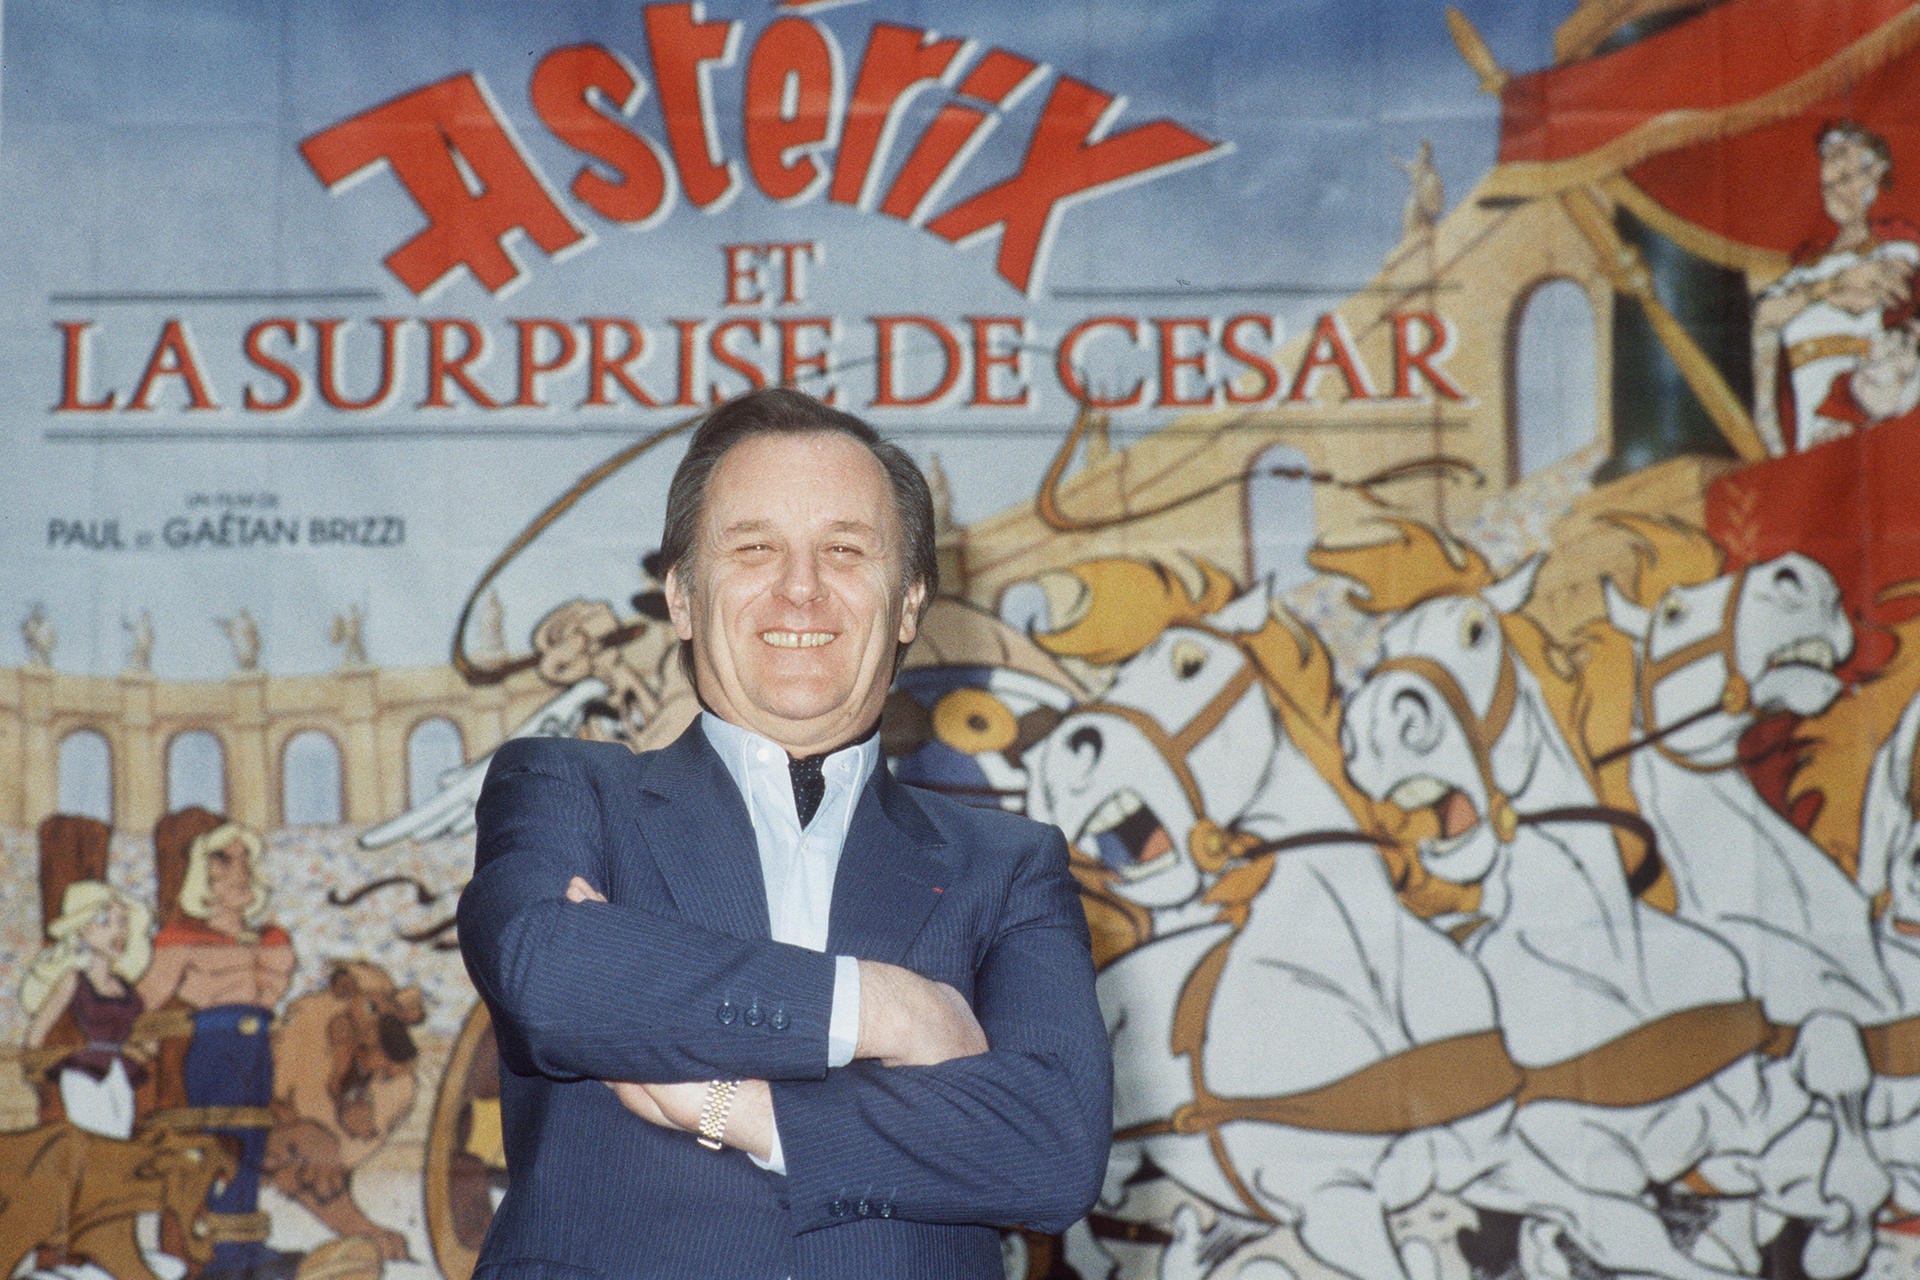 Asterix-Zeichner Albert Uderzo ist im Alter von 92 Jahren gestorben. Er erlitt eine Herzinfarkt. Das Foto entstand 1986 in den Idefix-Zeichentrick-Studios in Paris.